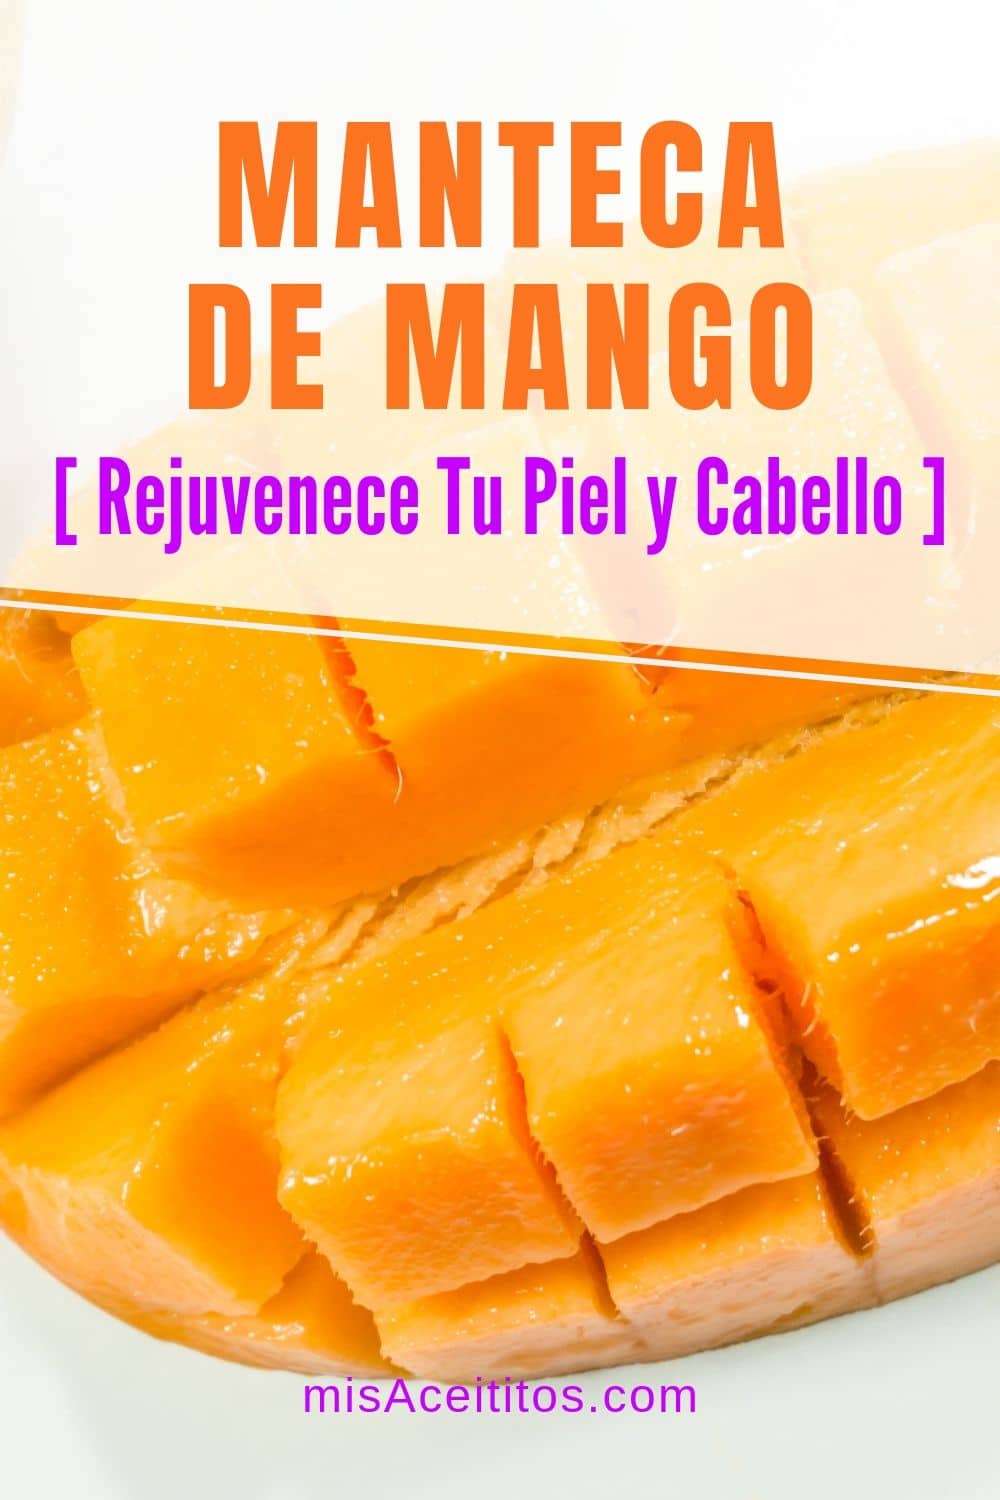 La Manteca de Mango es una potente hidratante y nutritiva que puede hacer maravillas en tu piel, rostro, cabello. Conoce todas sus propiedades, beneficios y usos.